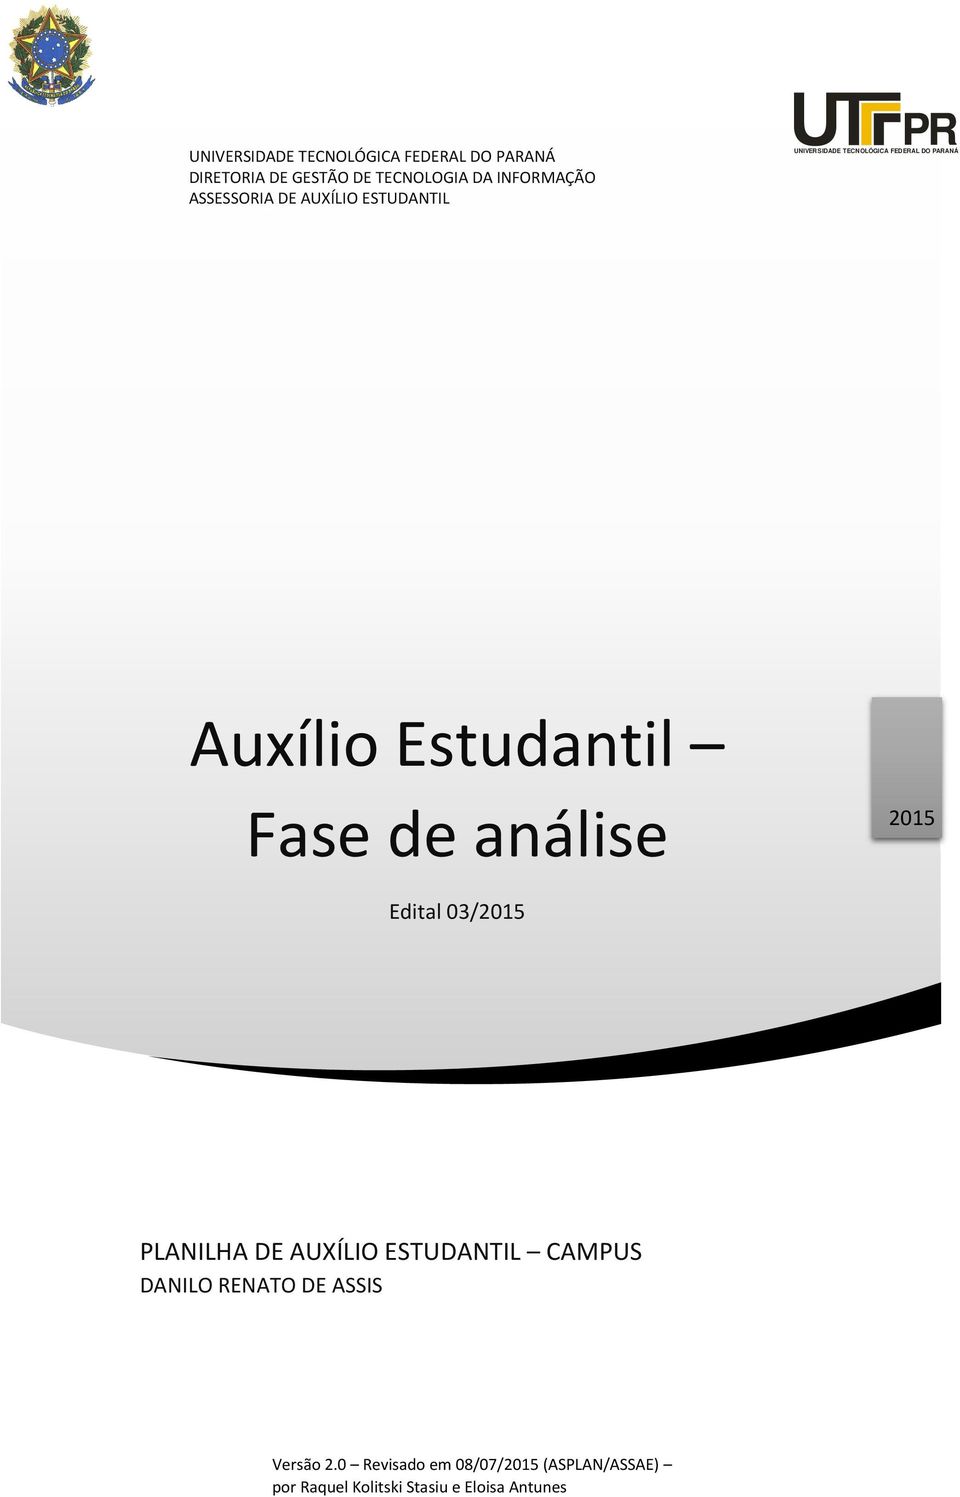 Estudantil Fase de análise 2015 Edital 03/2015 PLANILHA DE AUXÍLIO ESTUDANTIL CAMPUS DANILO